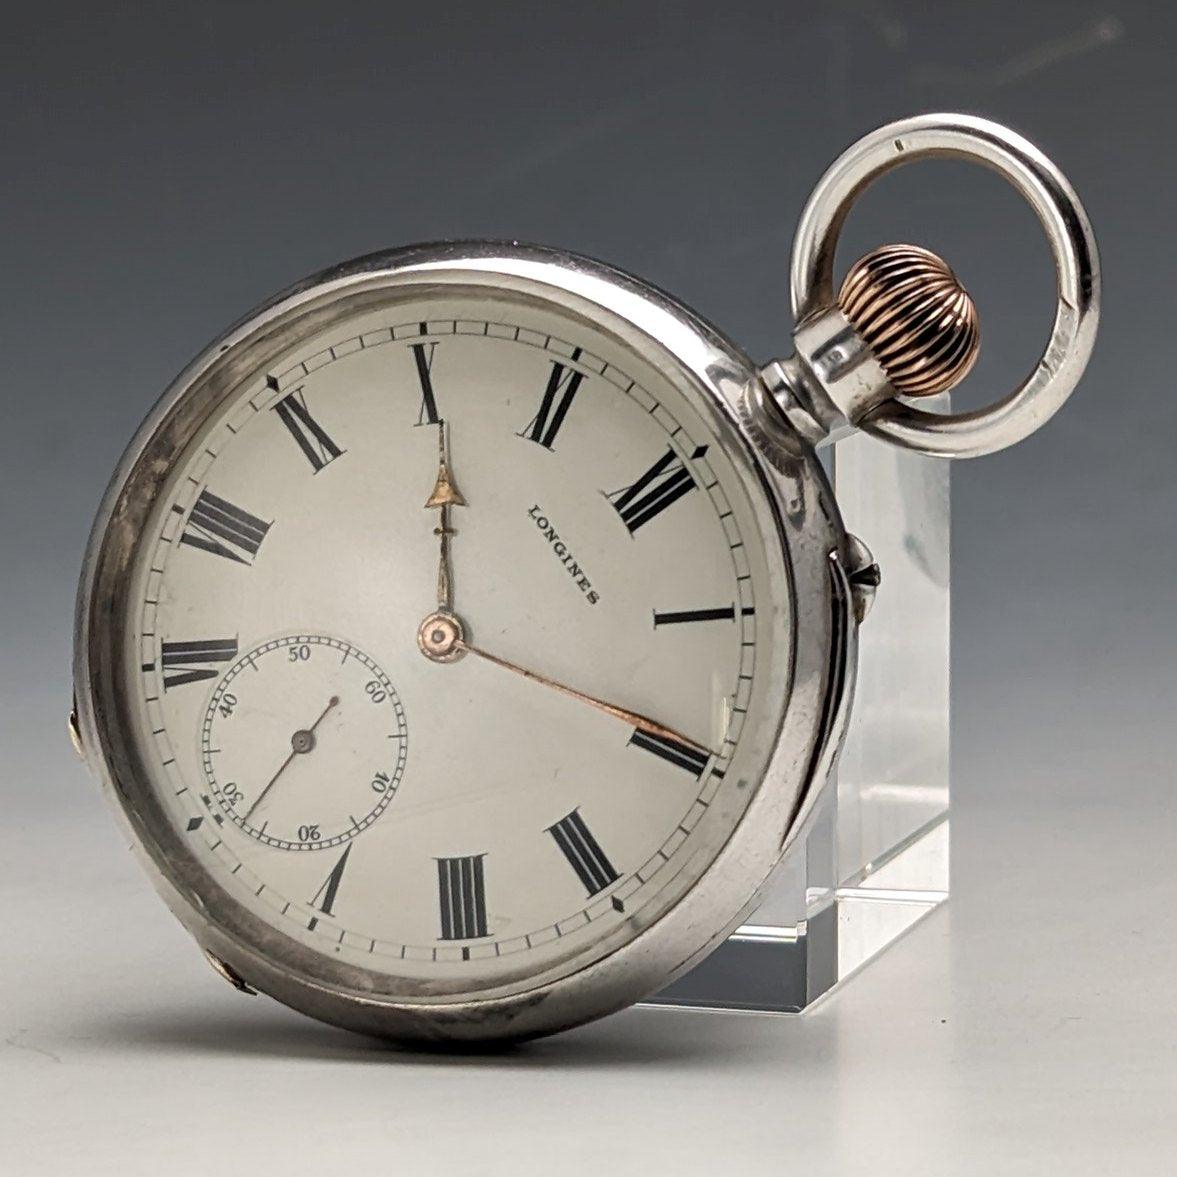 130年前の懐中時計オールドハワード VIIsplit 14kハンターケース - 時計